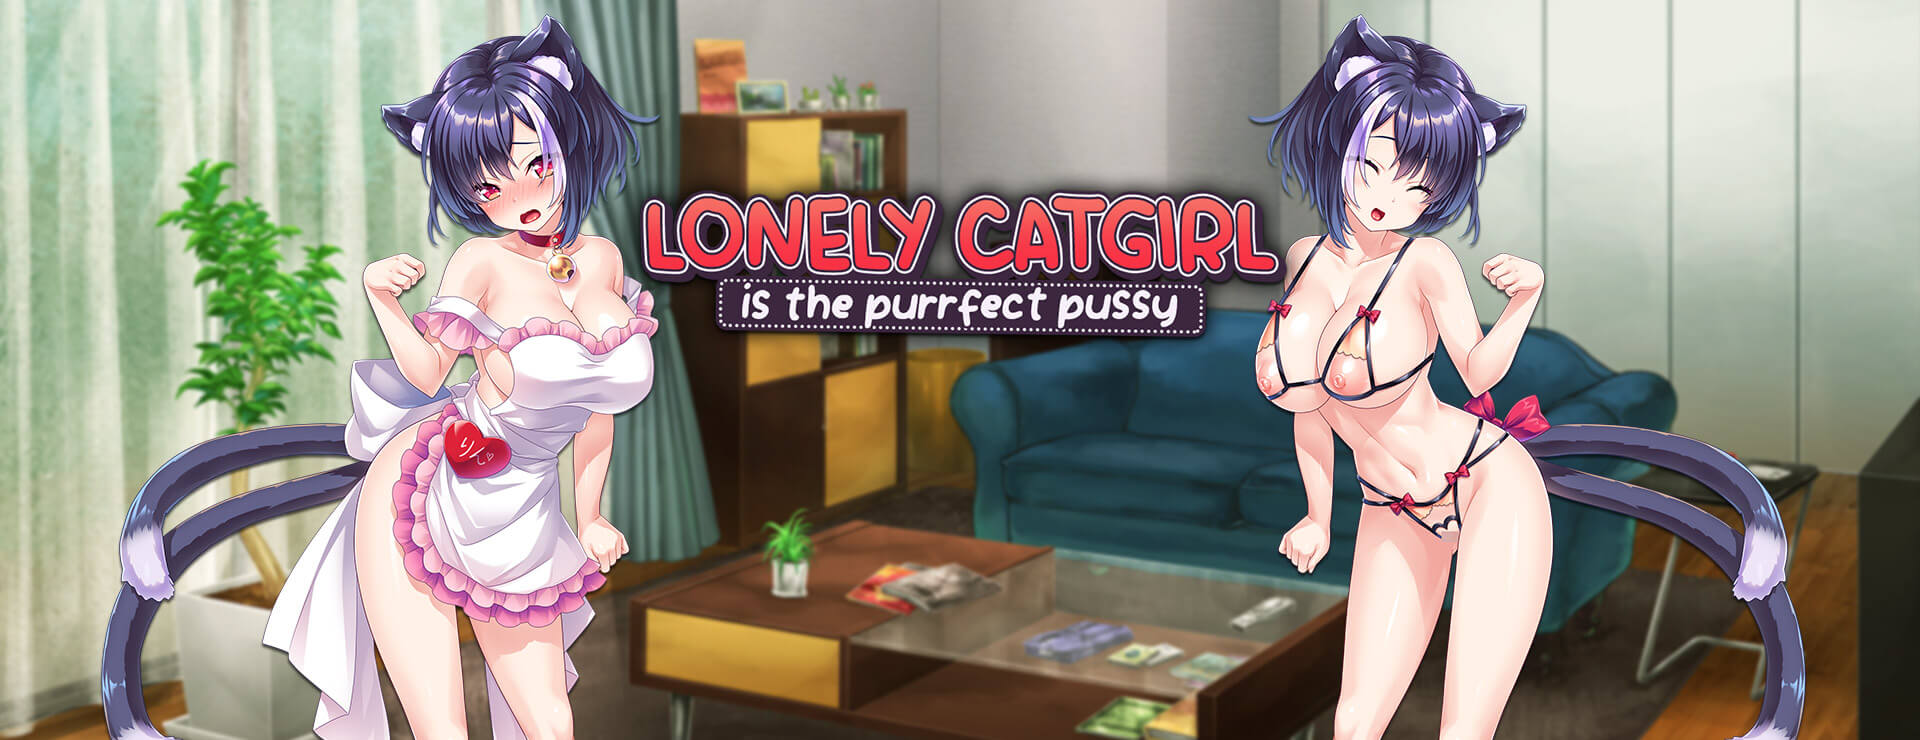 Lonely Catgirl is the Purrfect Pussy - Powieść wizualna Gra